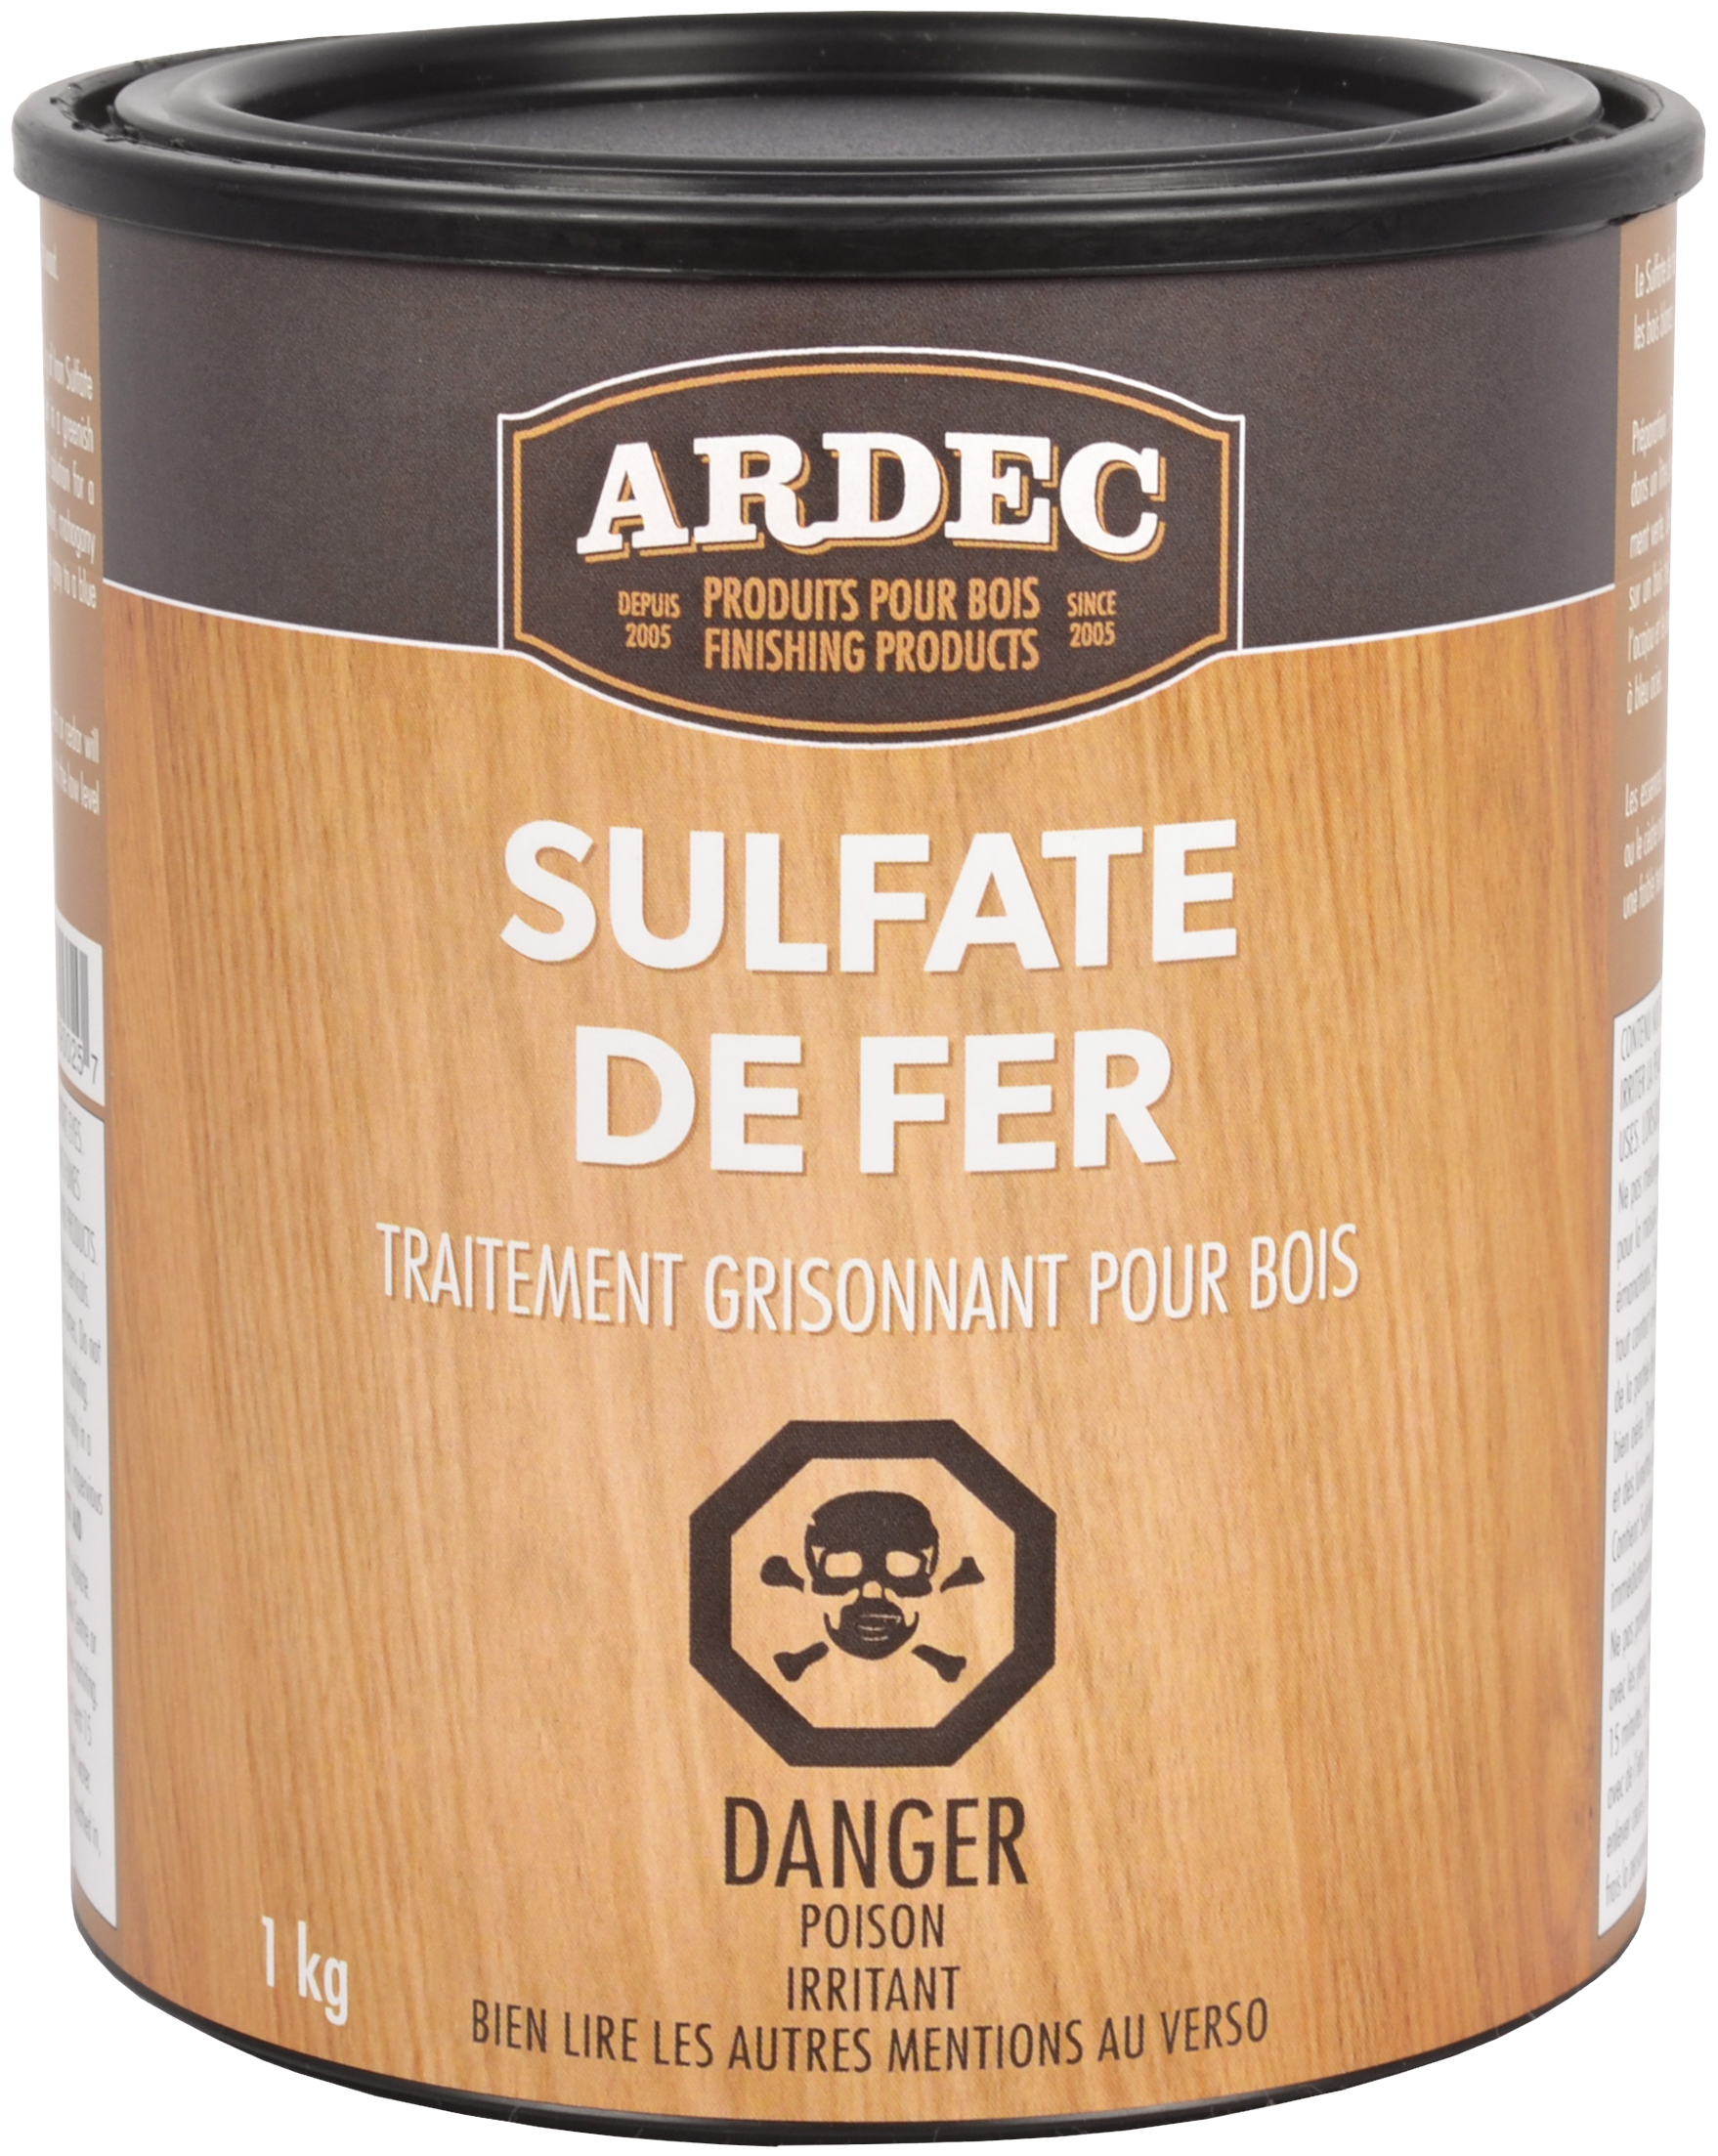 Alcool dénaturé - Finico - Ardec - Produits pour bois